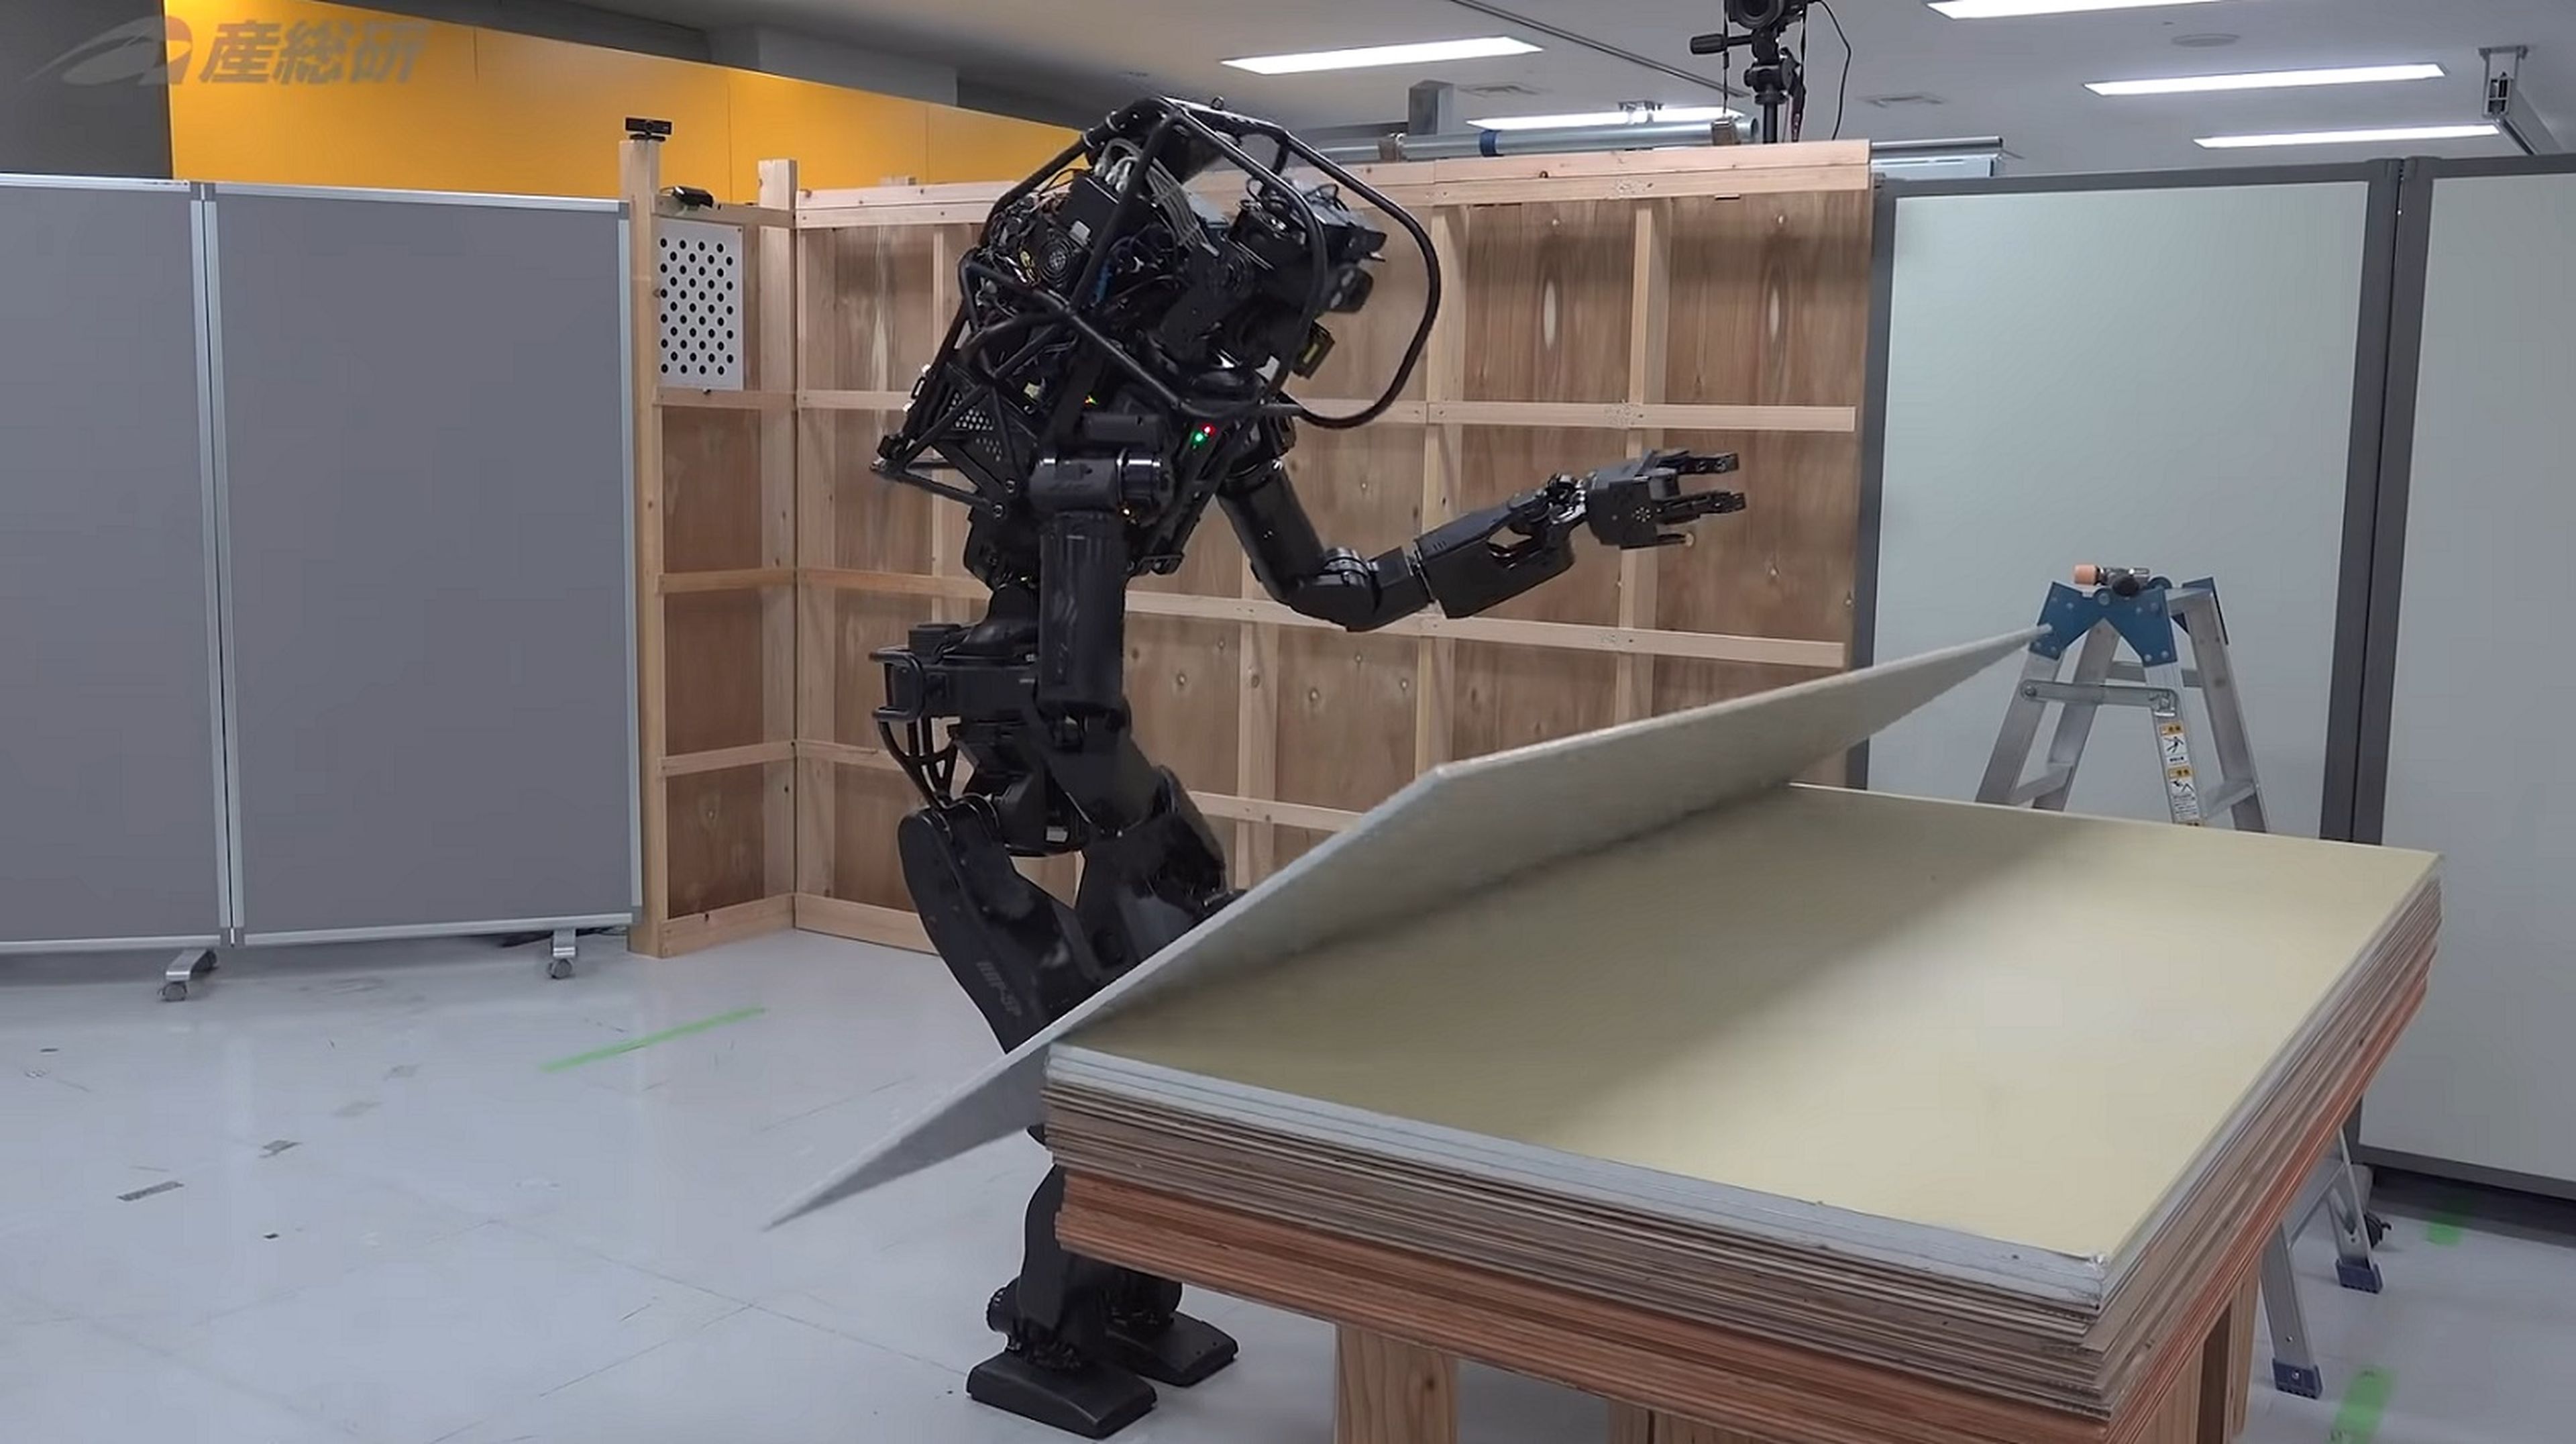 El robot constructor del instituto tecnológico japonés.